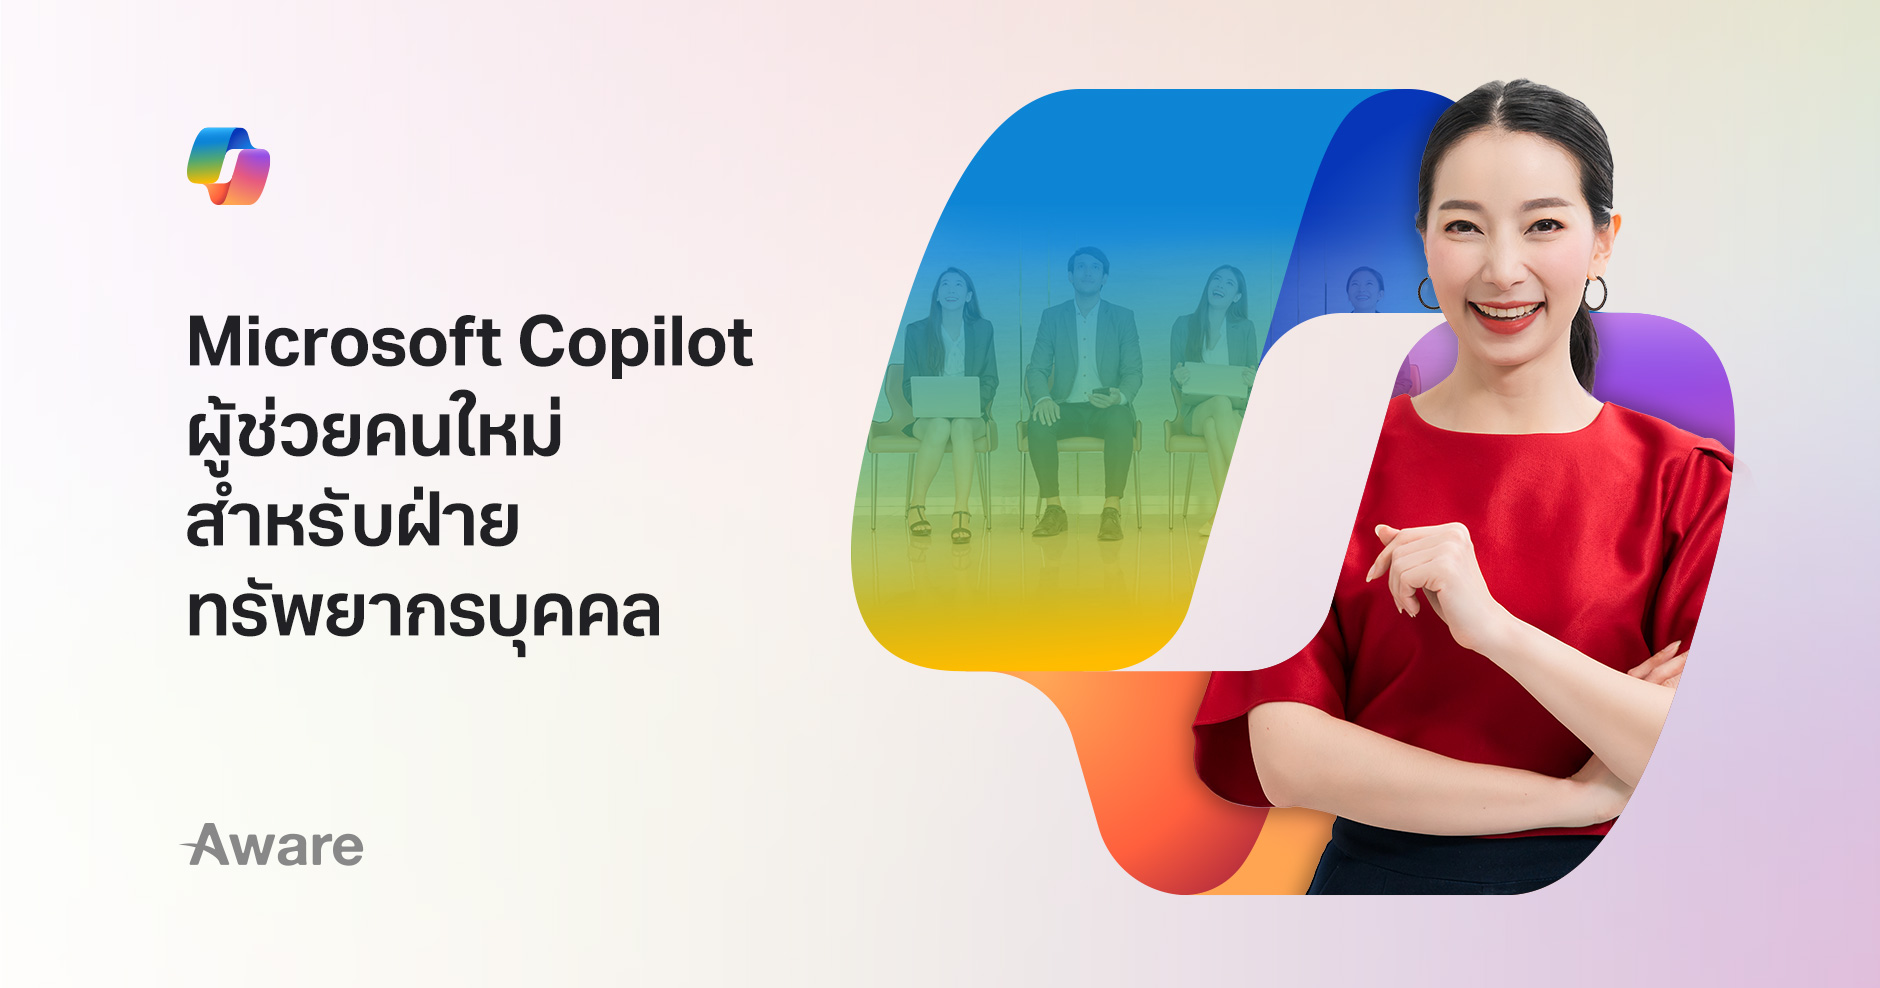 Microsoft Copilot ผู้ช่วยคนใหม่สำหรับฝ่ายทรัพยากรบุคคล